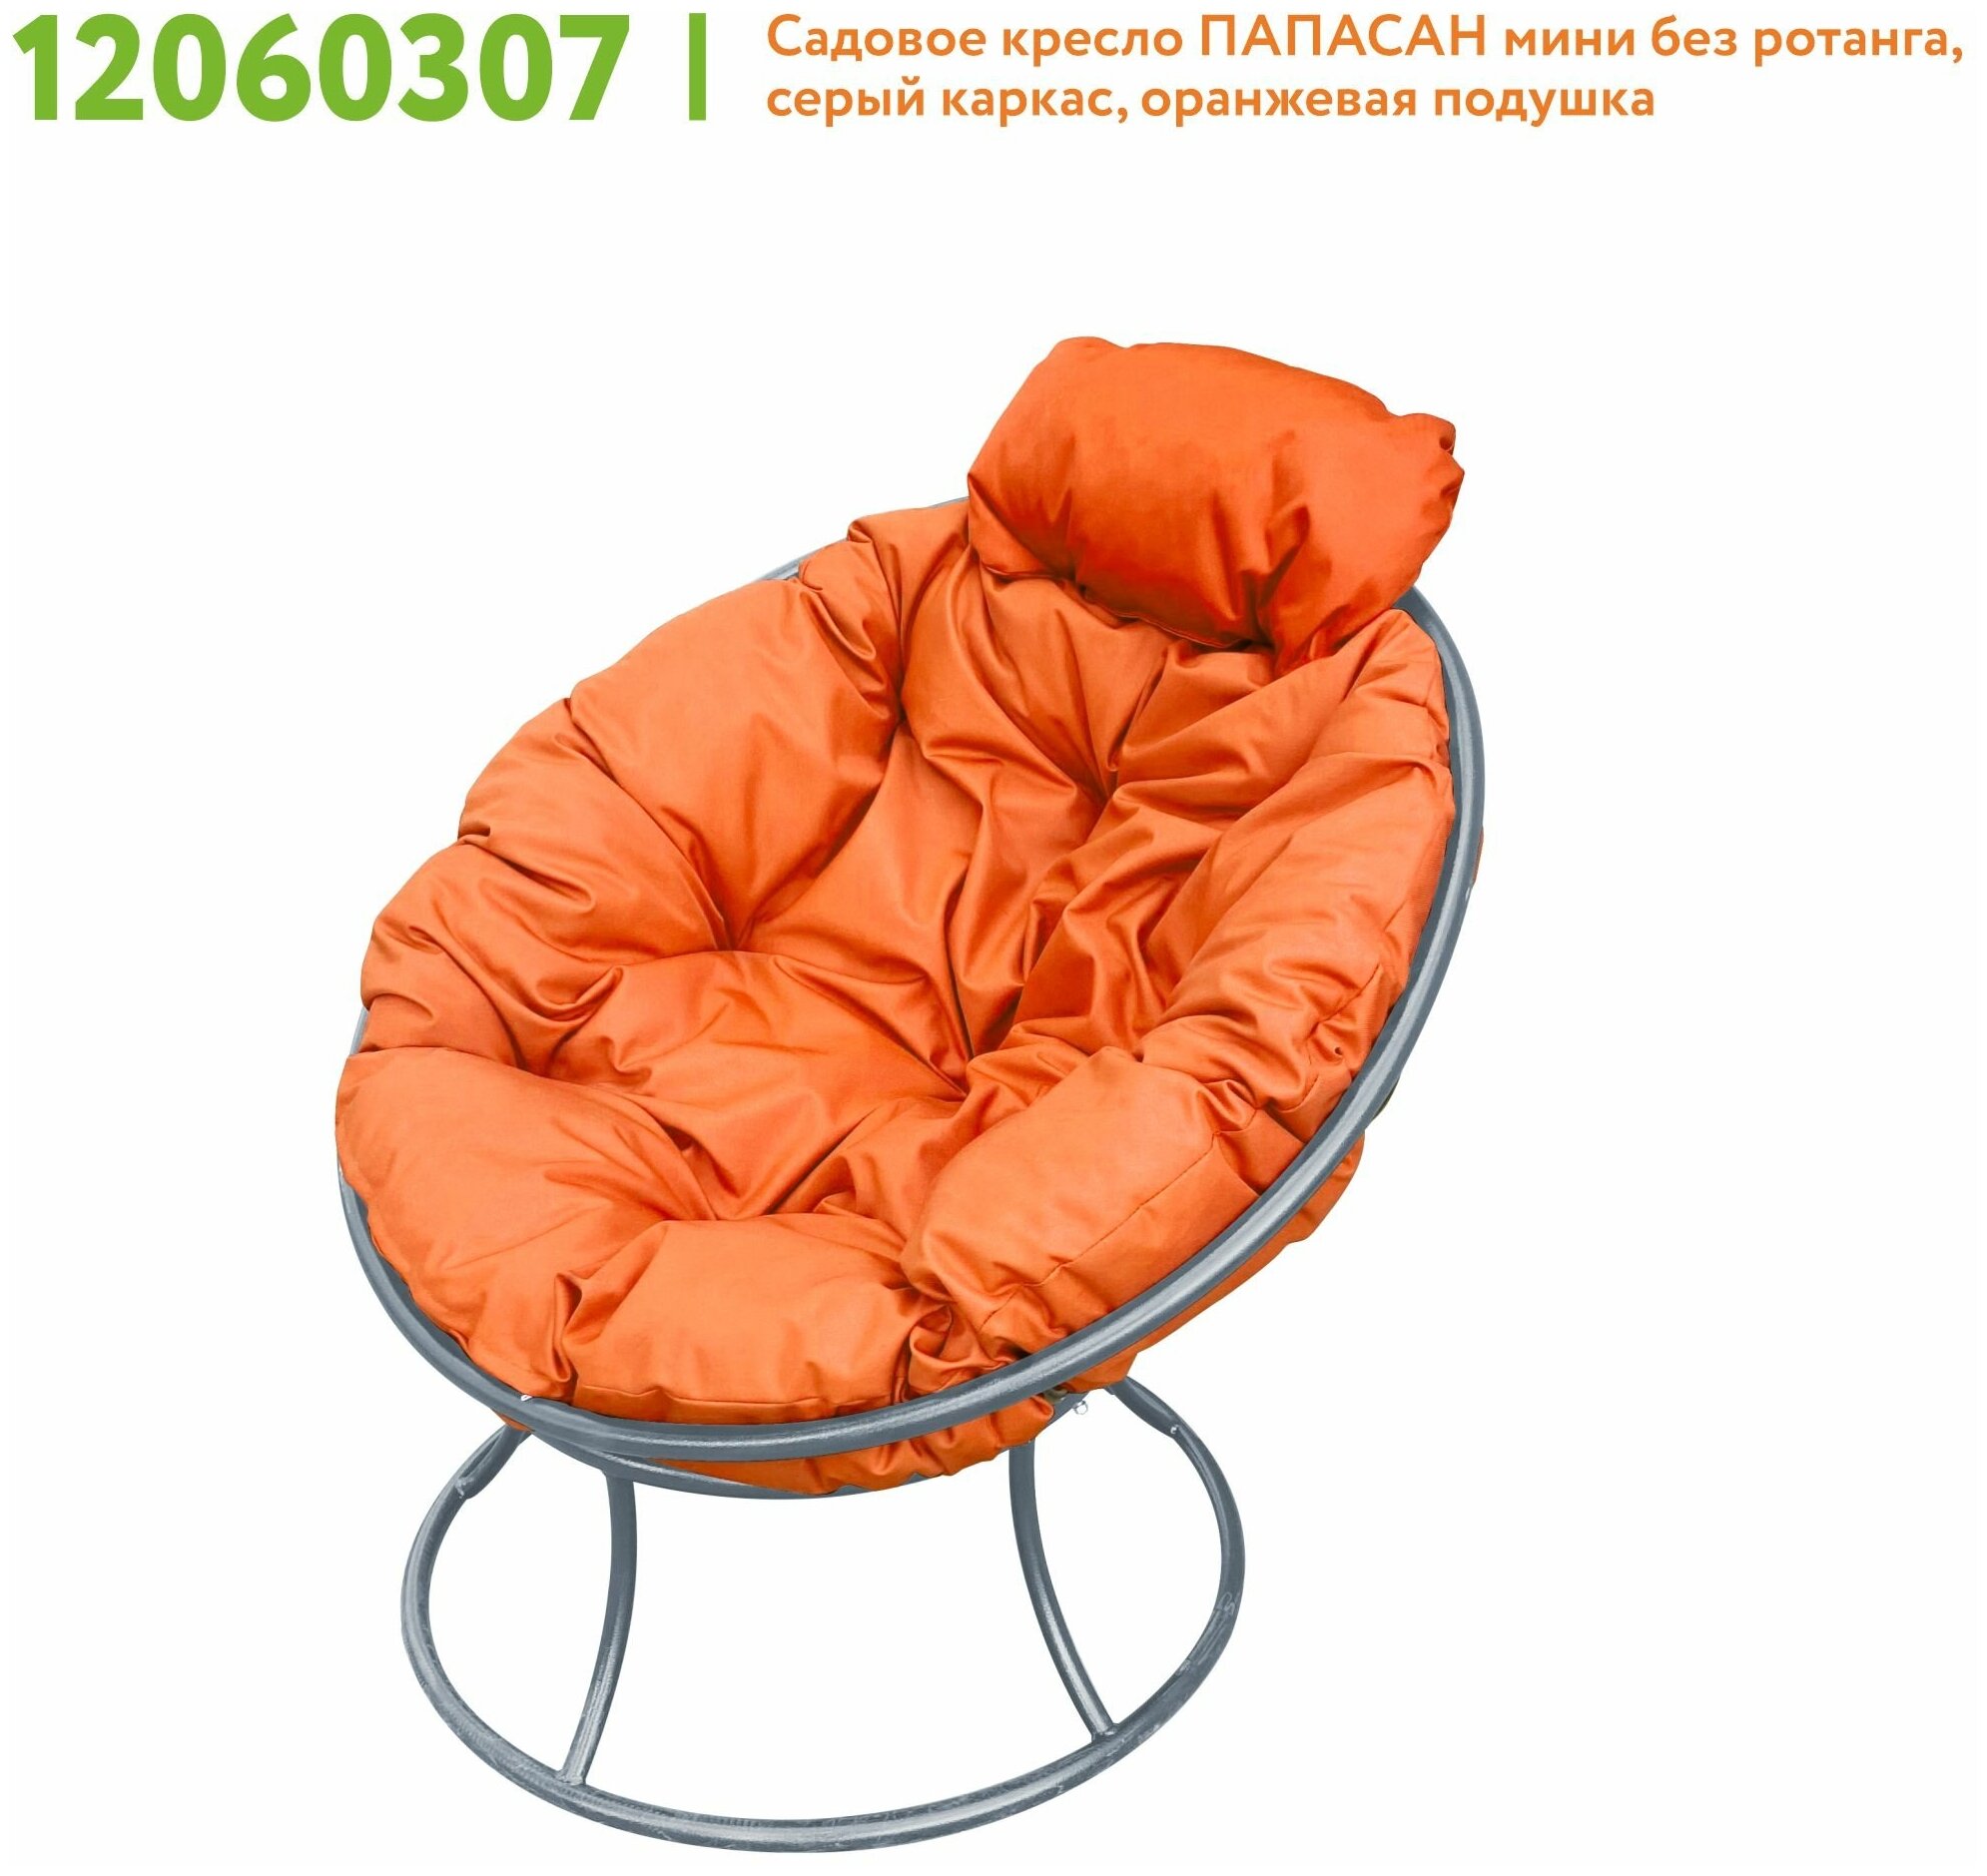 Кресло m-group папасан мини серое, оранжевая подушка - фотография № 5